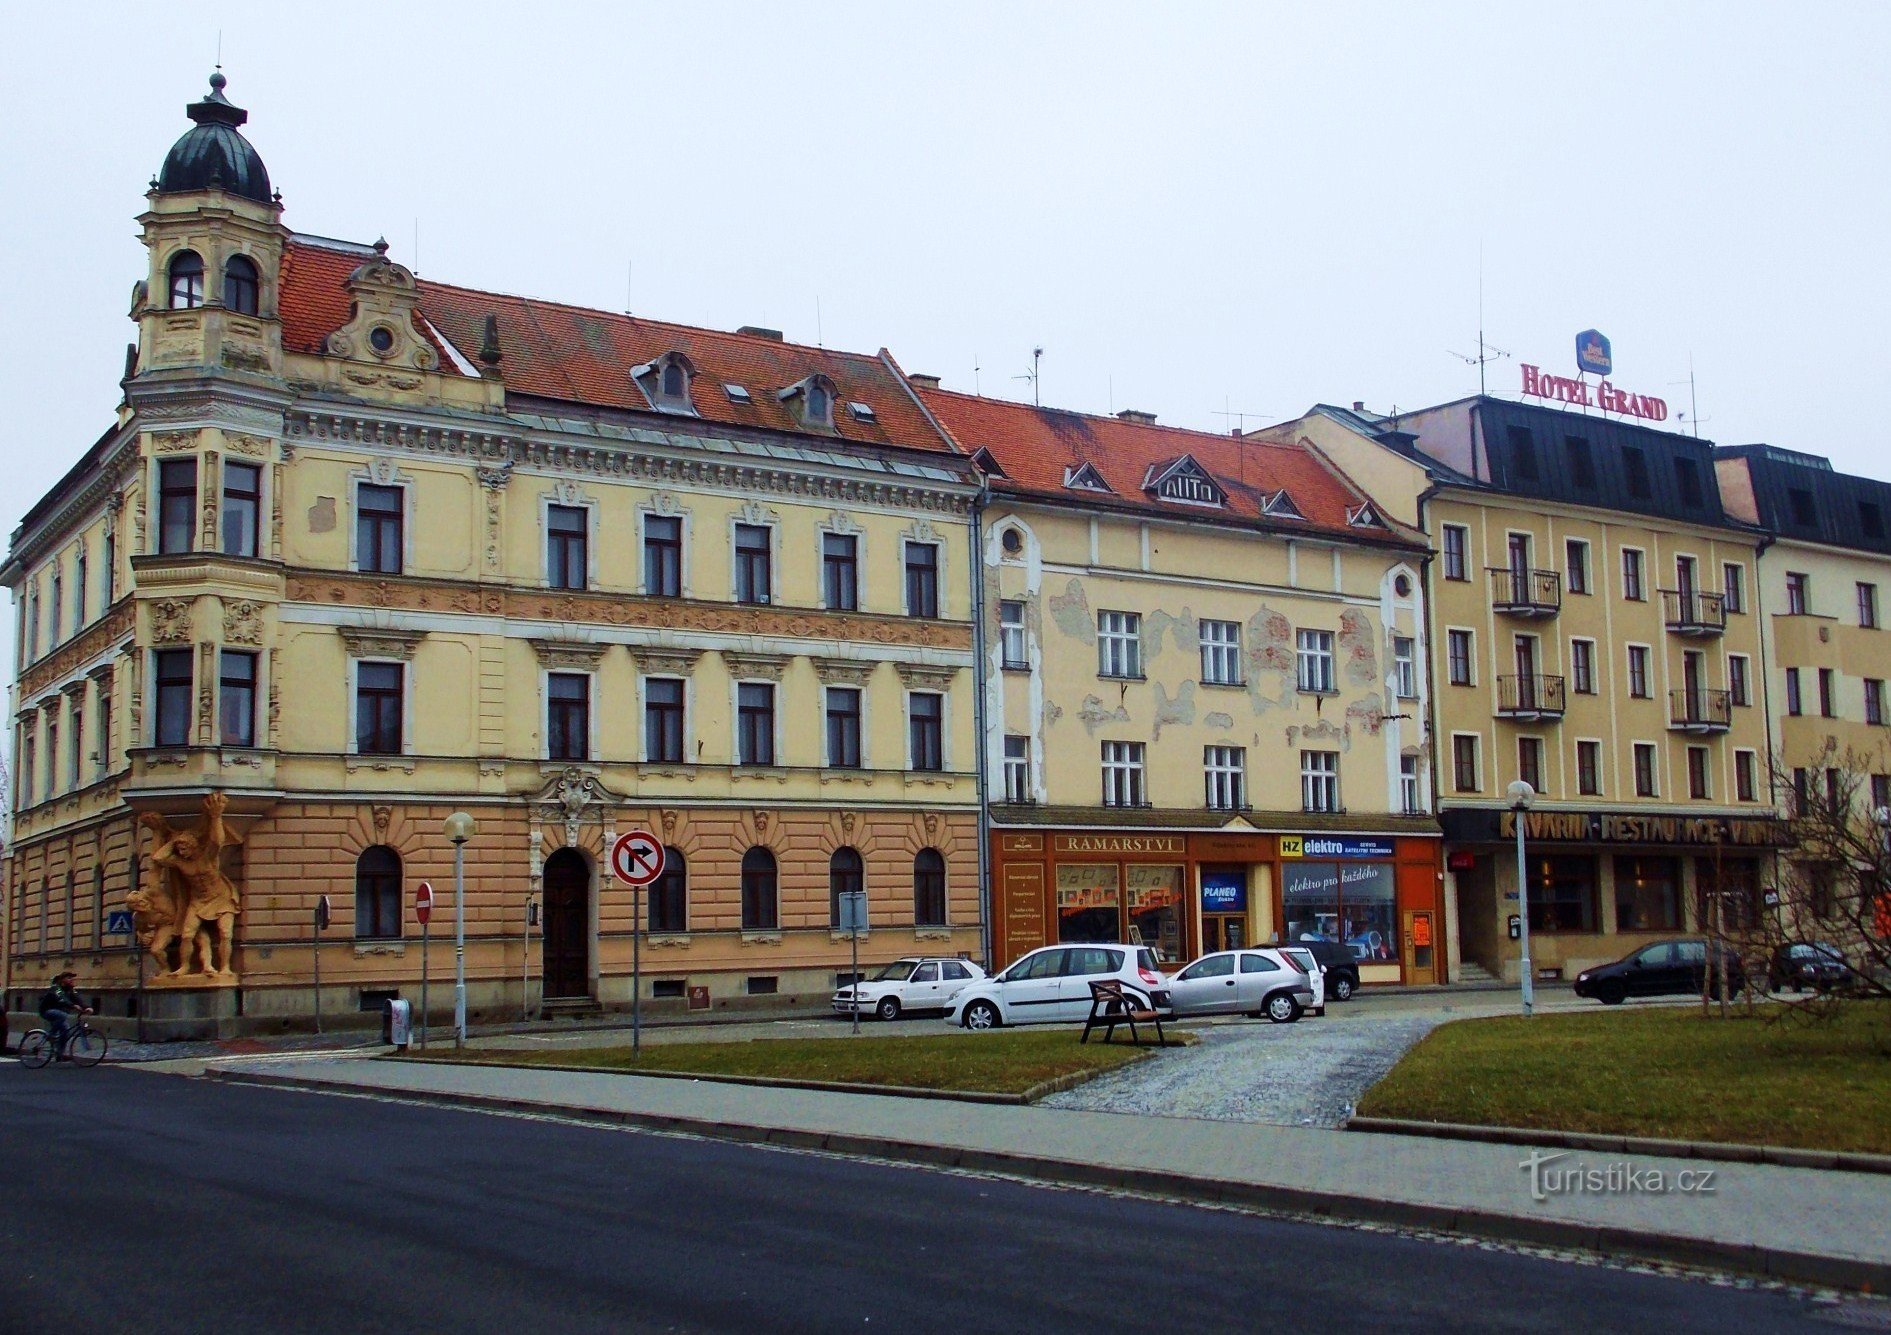 Peste Náměstí Palackého în Uh. Hradišti